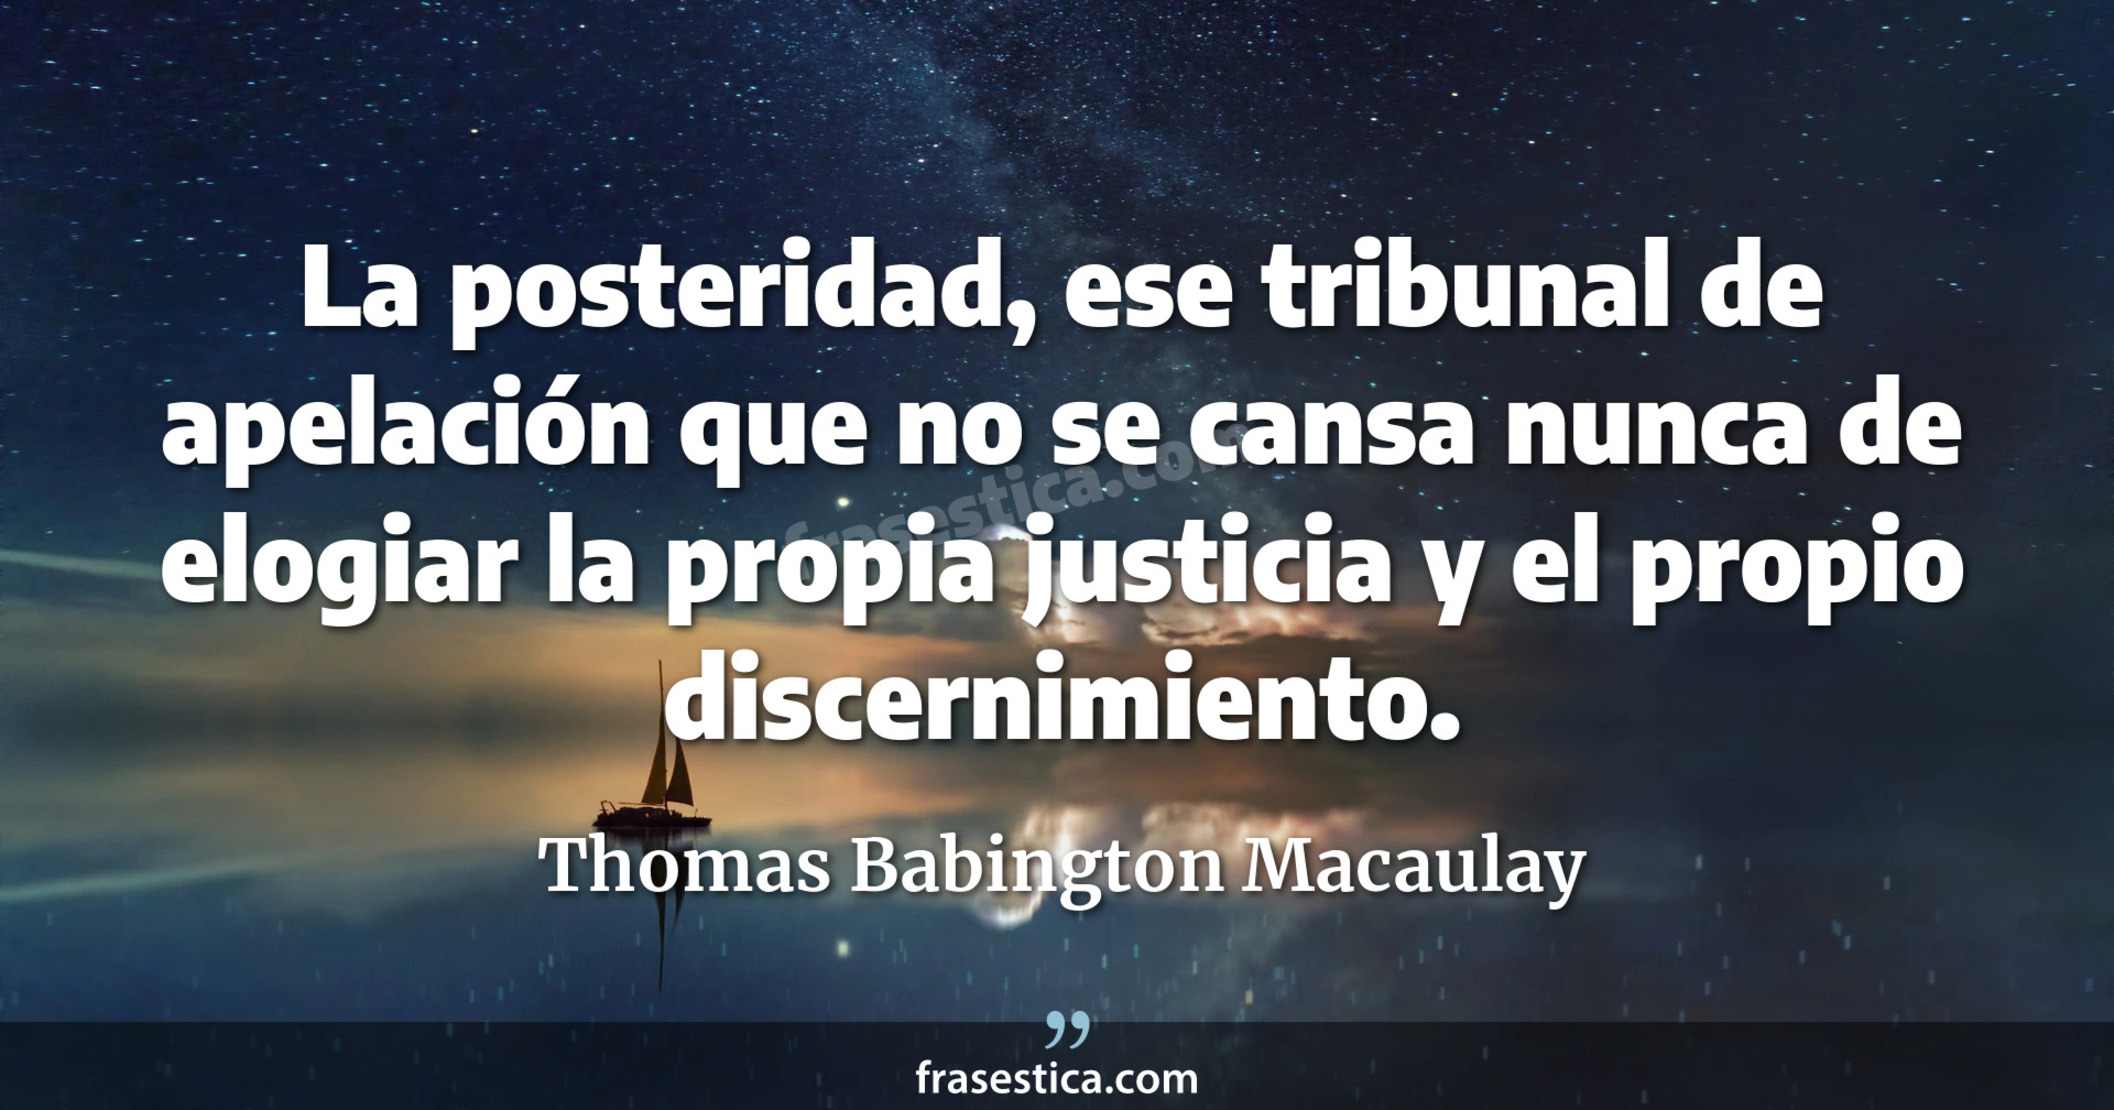 La posteridad, ese tribunal de apelación que no se cansa nunca de elogiar la propia justicia y el propio discernimiento. - Thomas Babington Macaulay